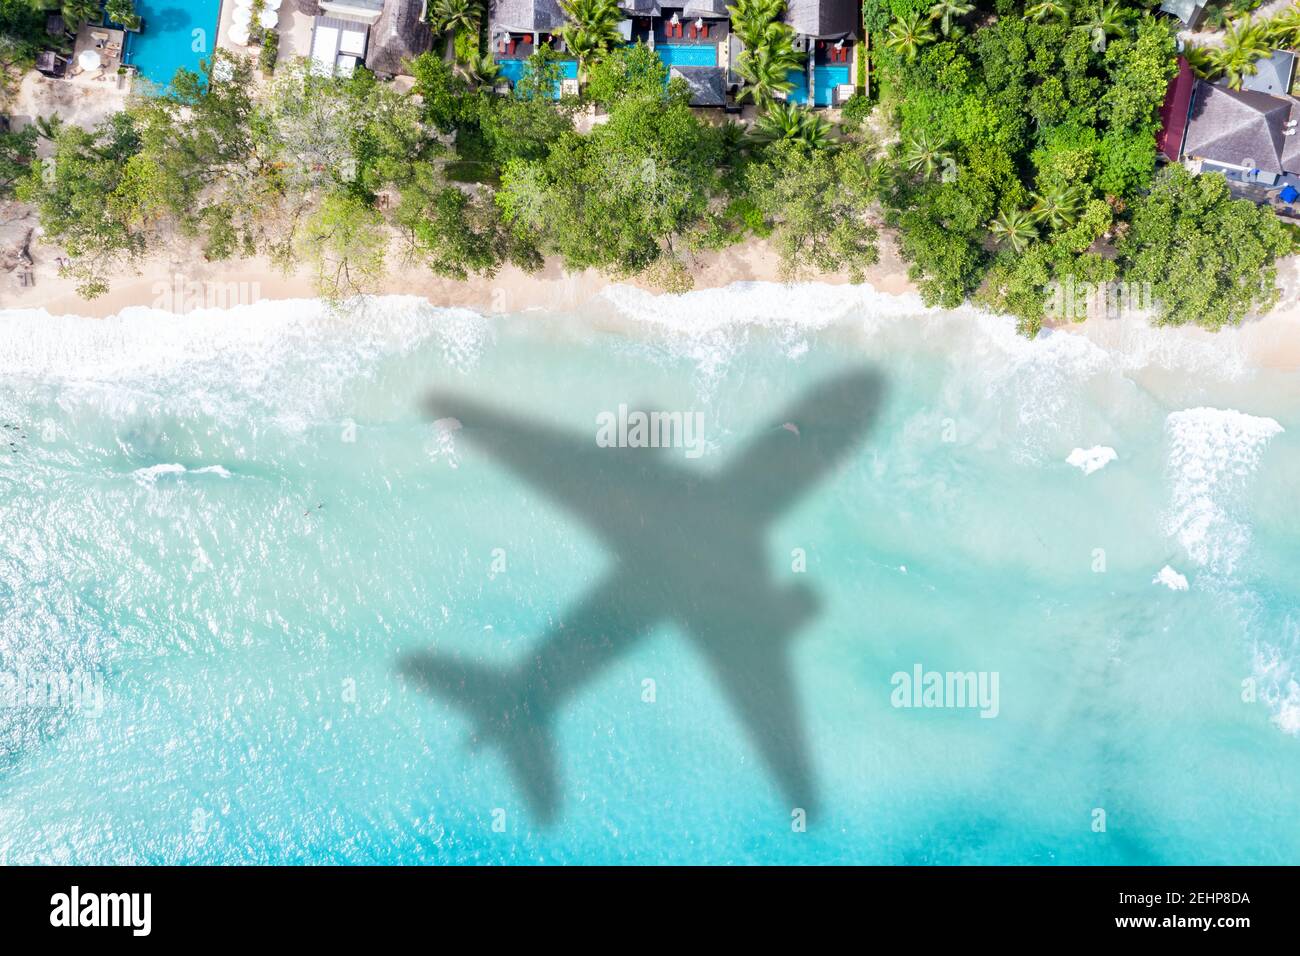 Viaggio viaggio vacanza mare simbolico immagine aereo volo Seychelles spiaggia immagine dell'acqua Foto Stock